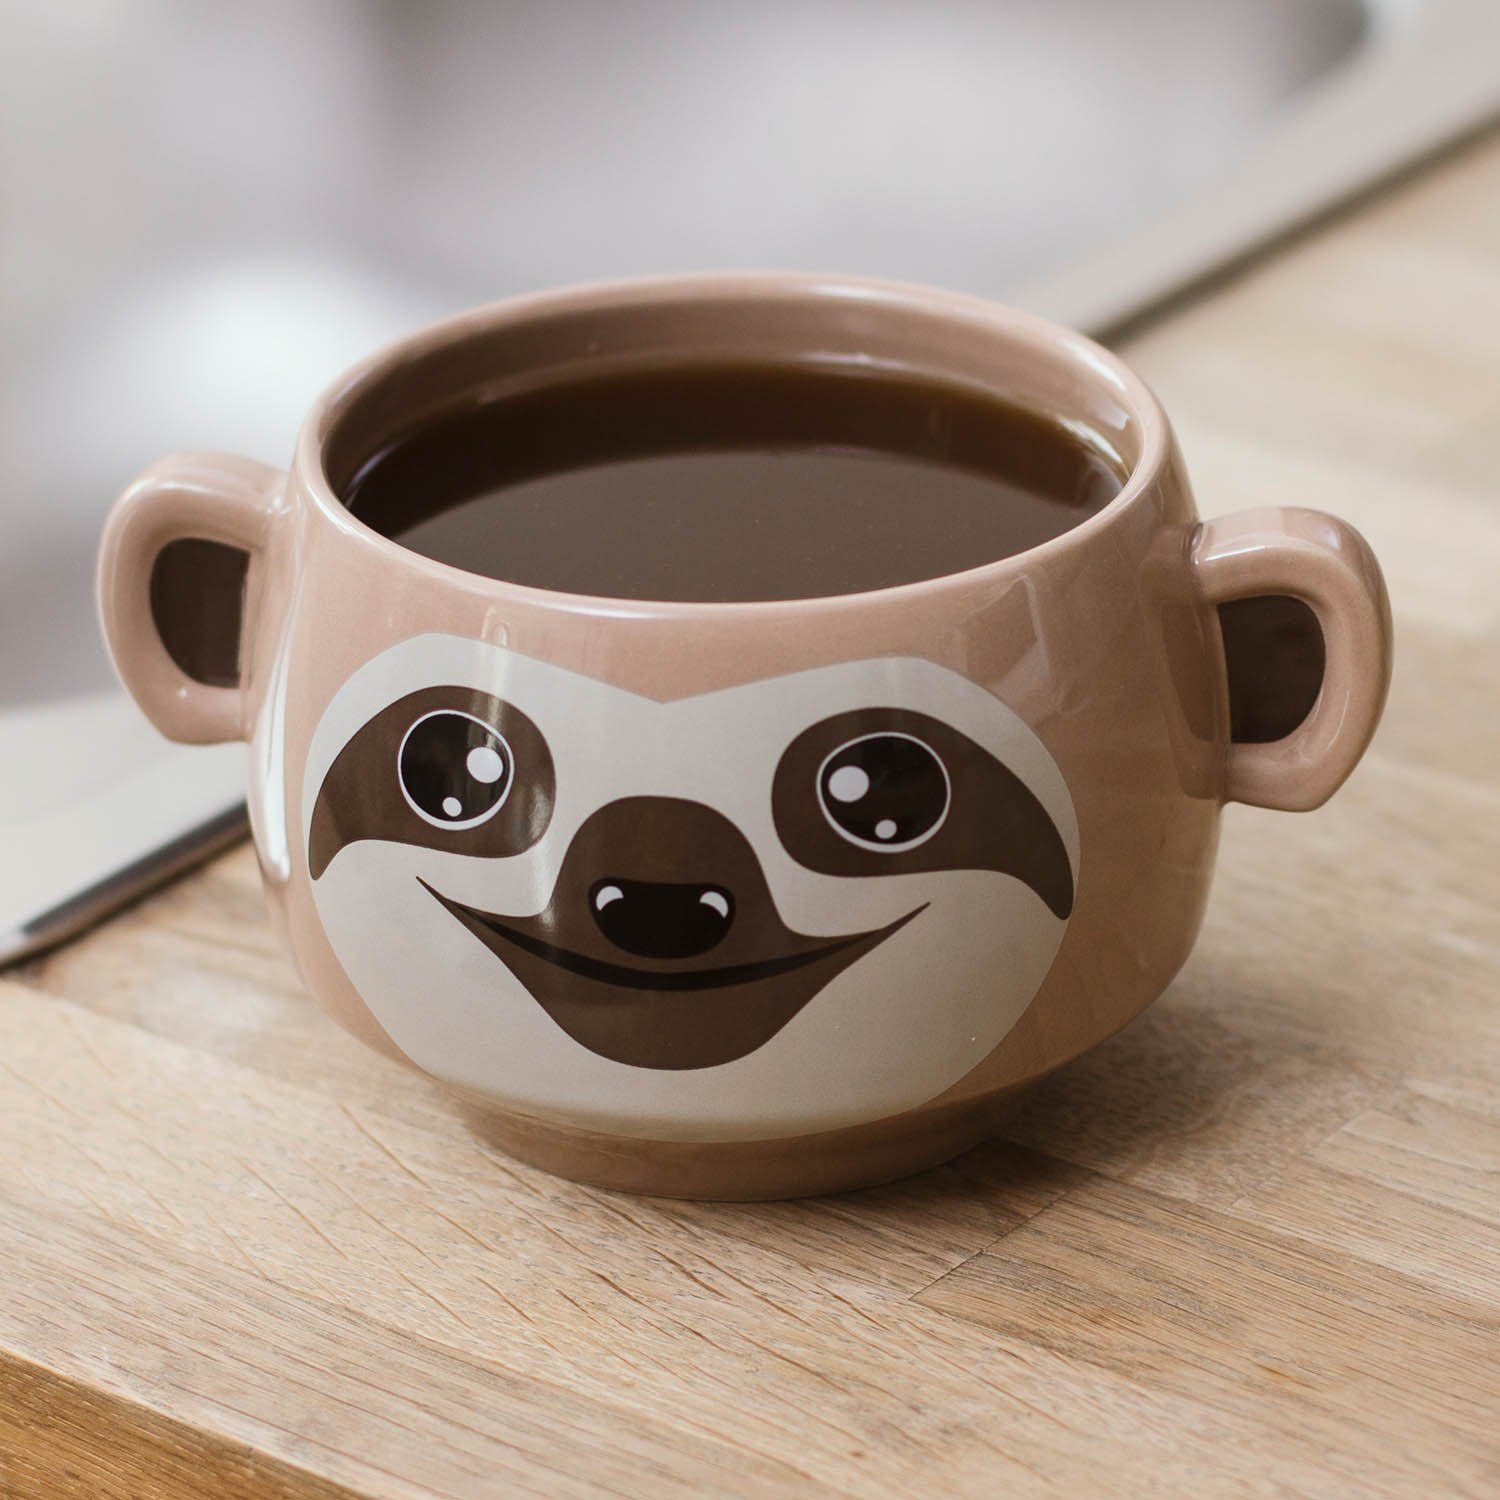 Thumbs Up Tasse "Sloth Mug" - Faultier Tasse, Keramik